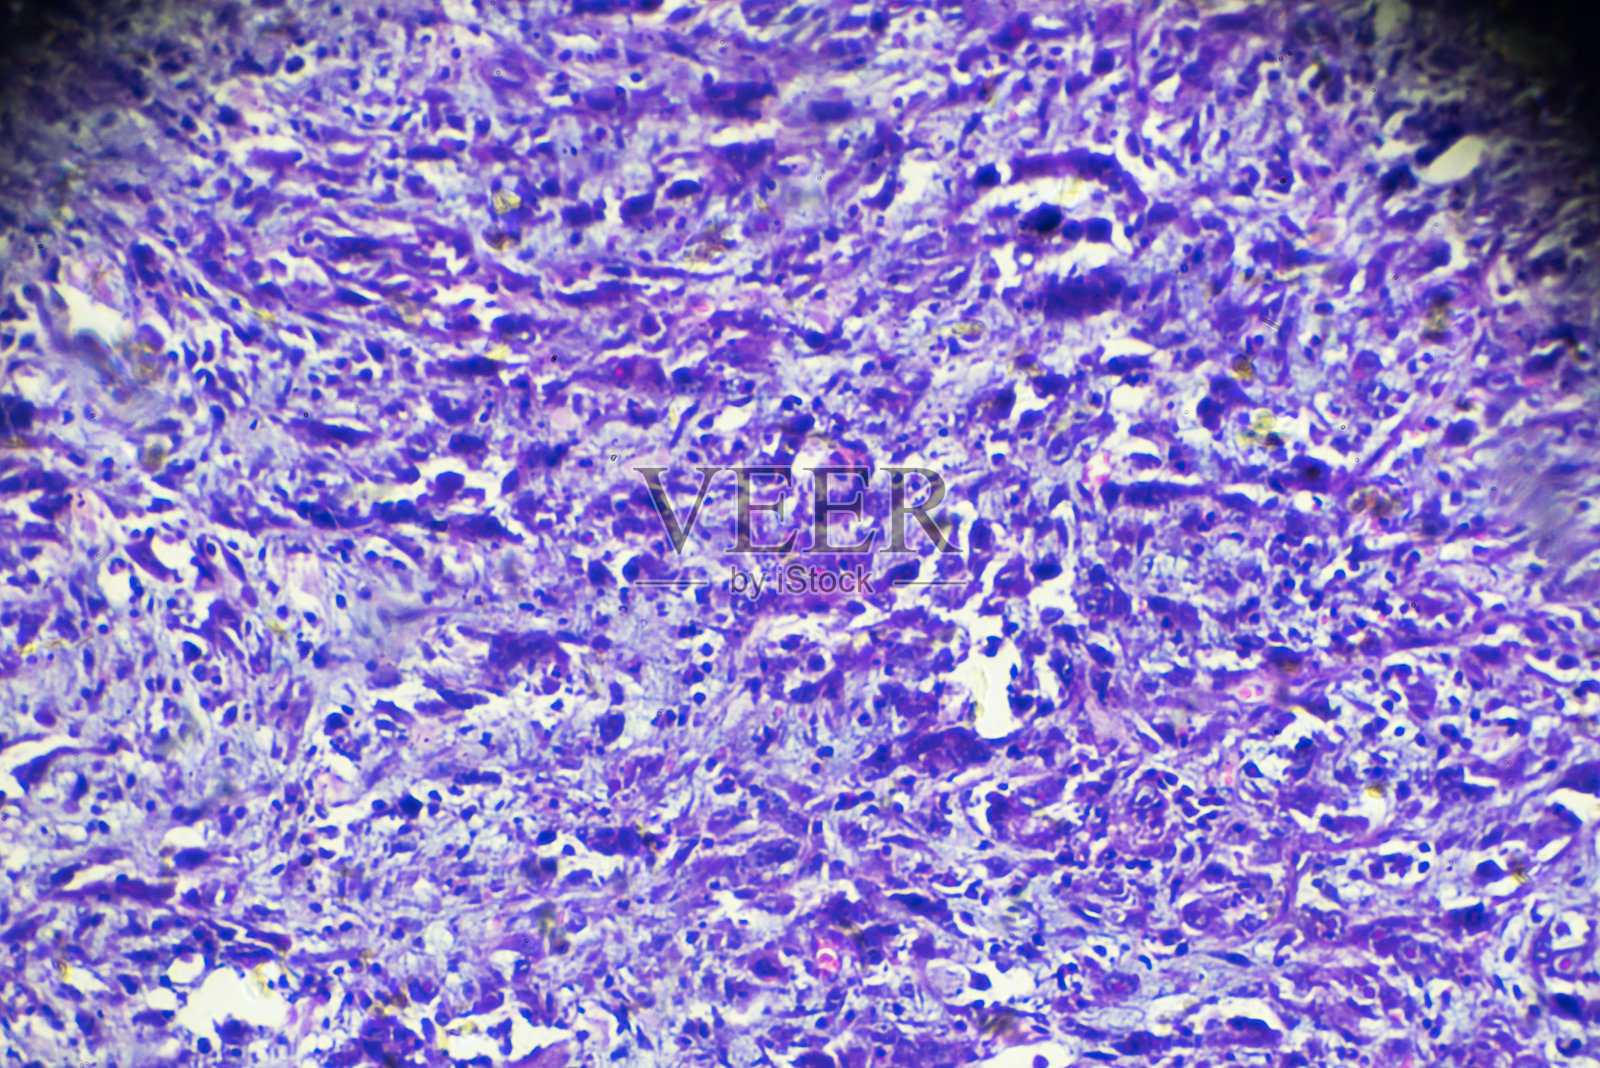 光镜下鼻咽癌(泡状核细胞癌)照片摄影图片